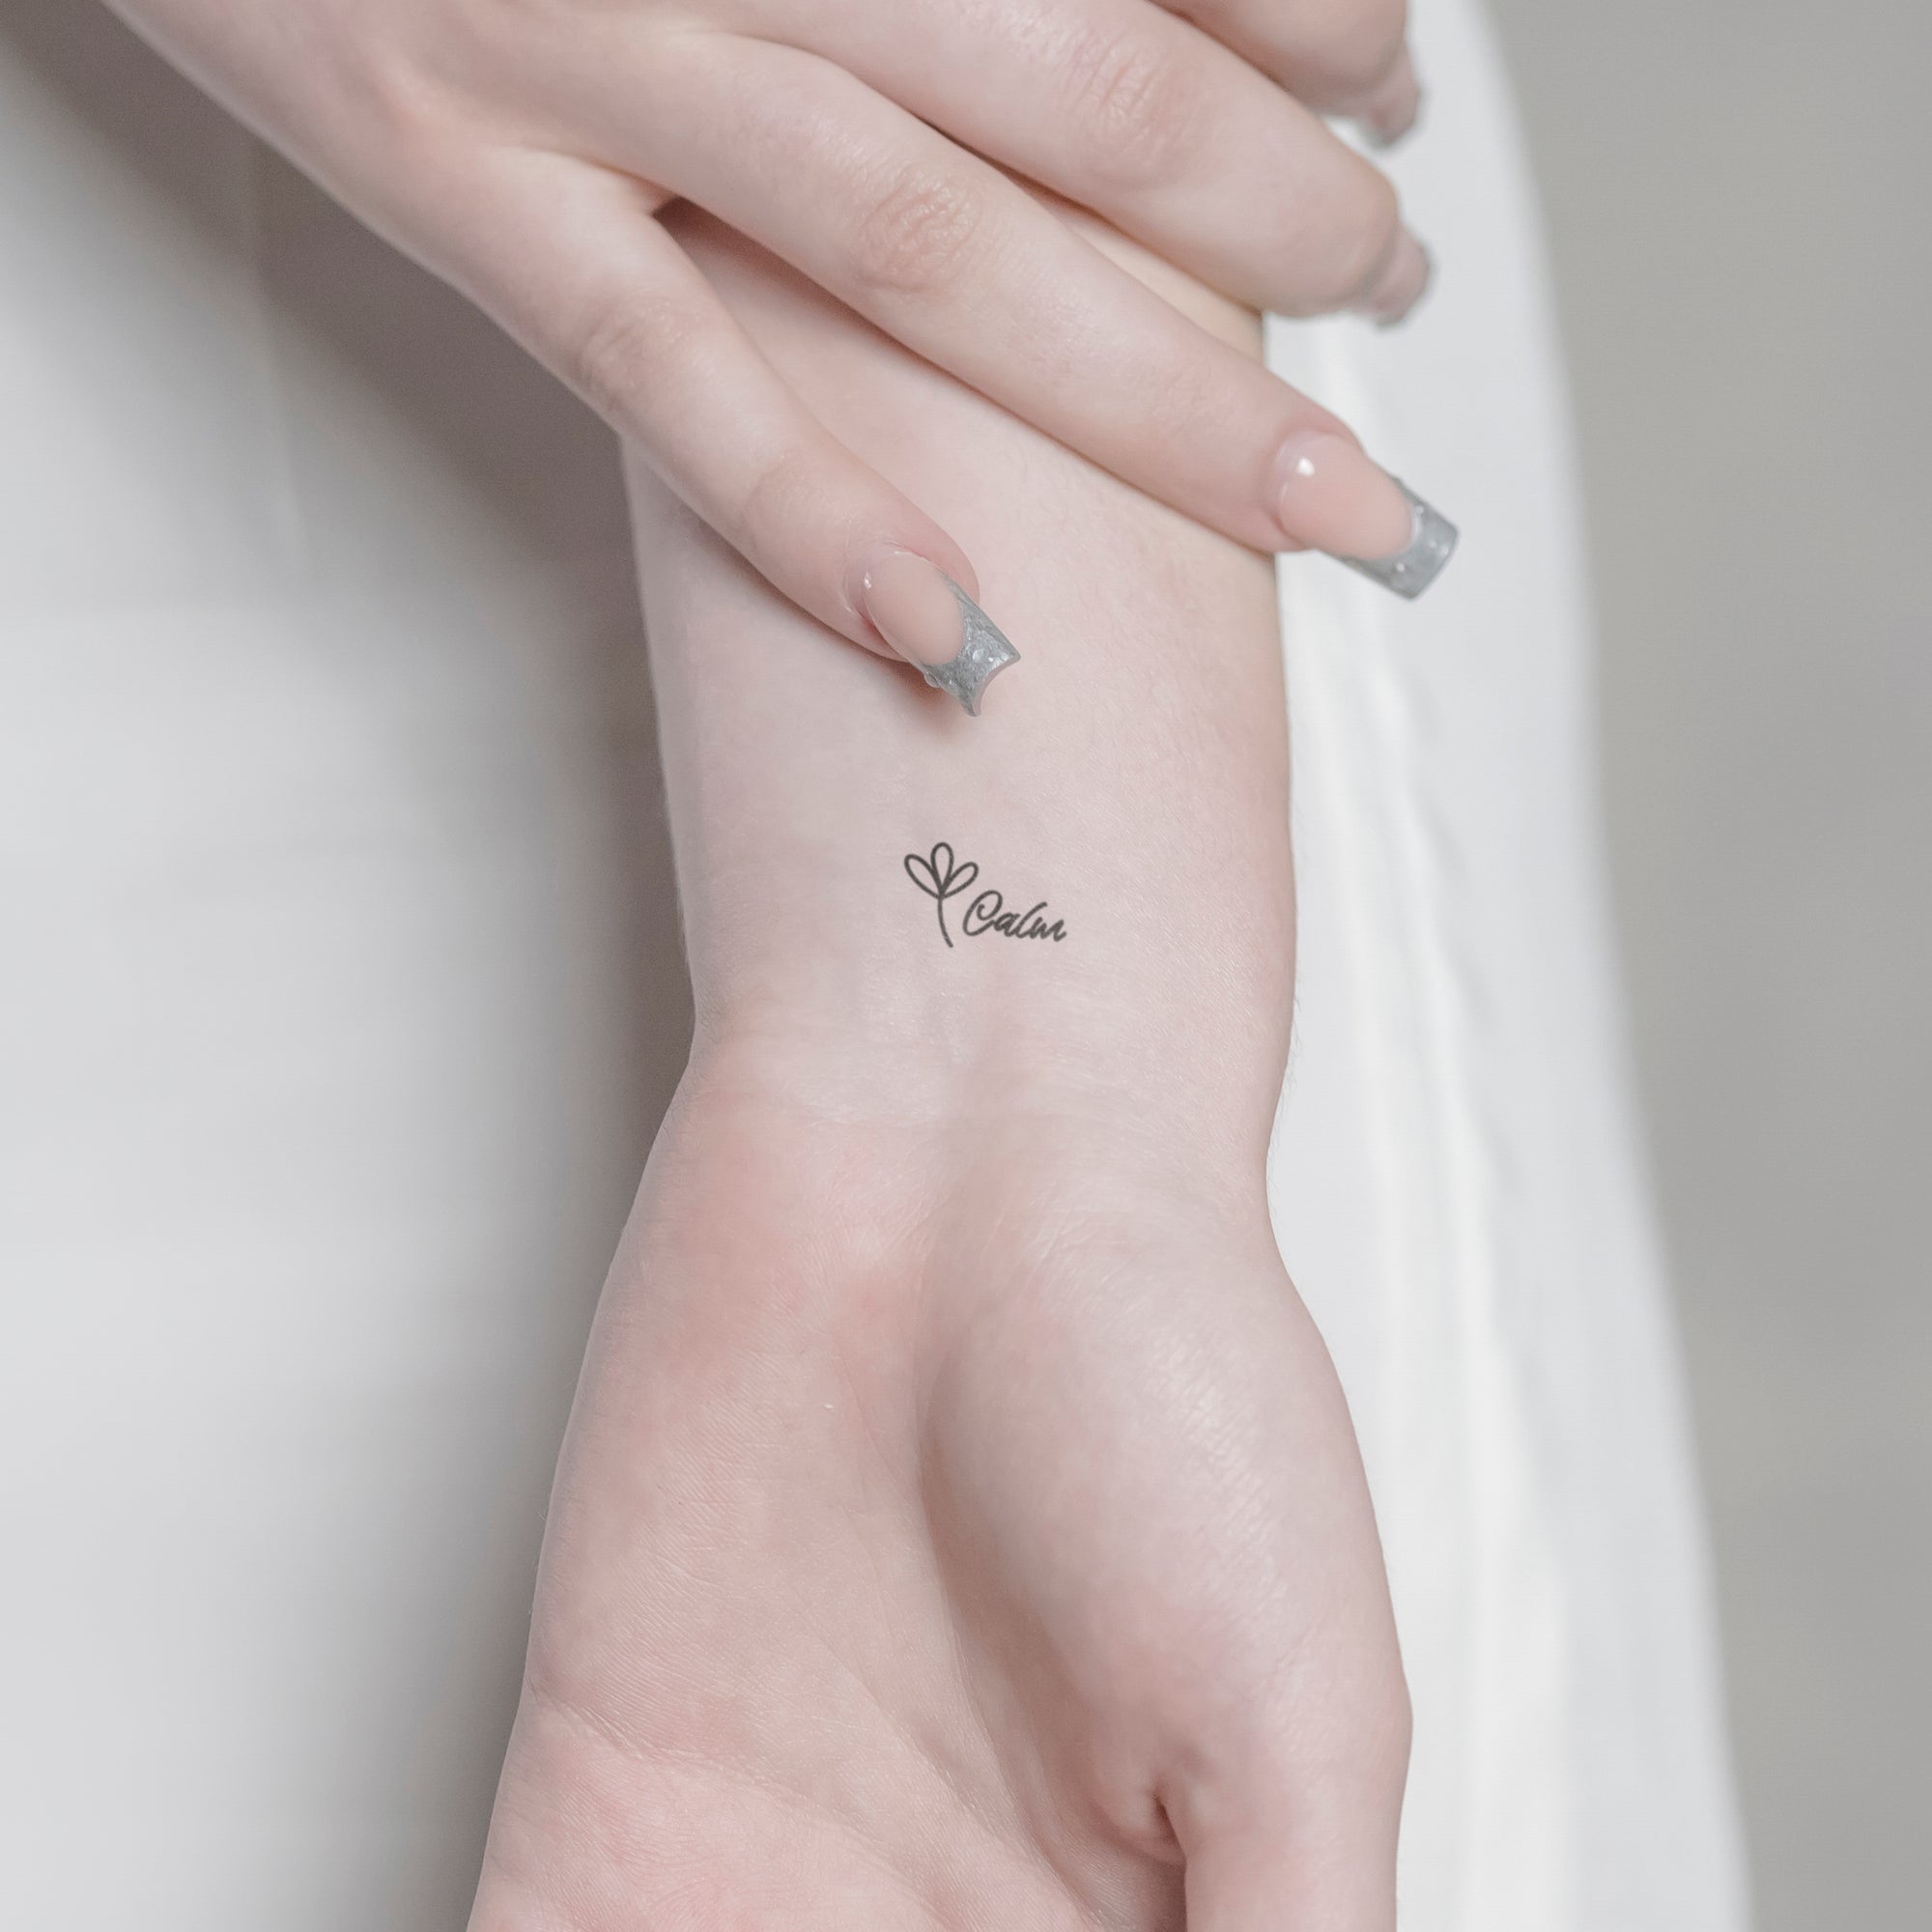 Schriftzug Tattoo Calm von minink, der Marke für temporäre Tattoos.